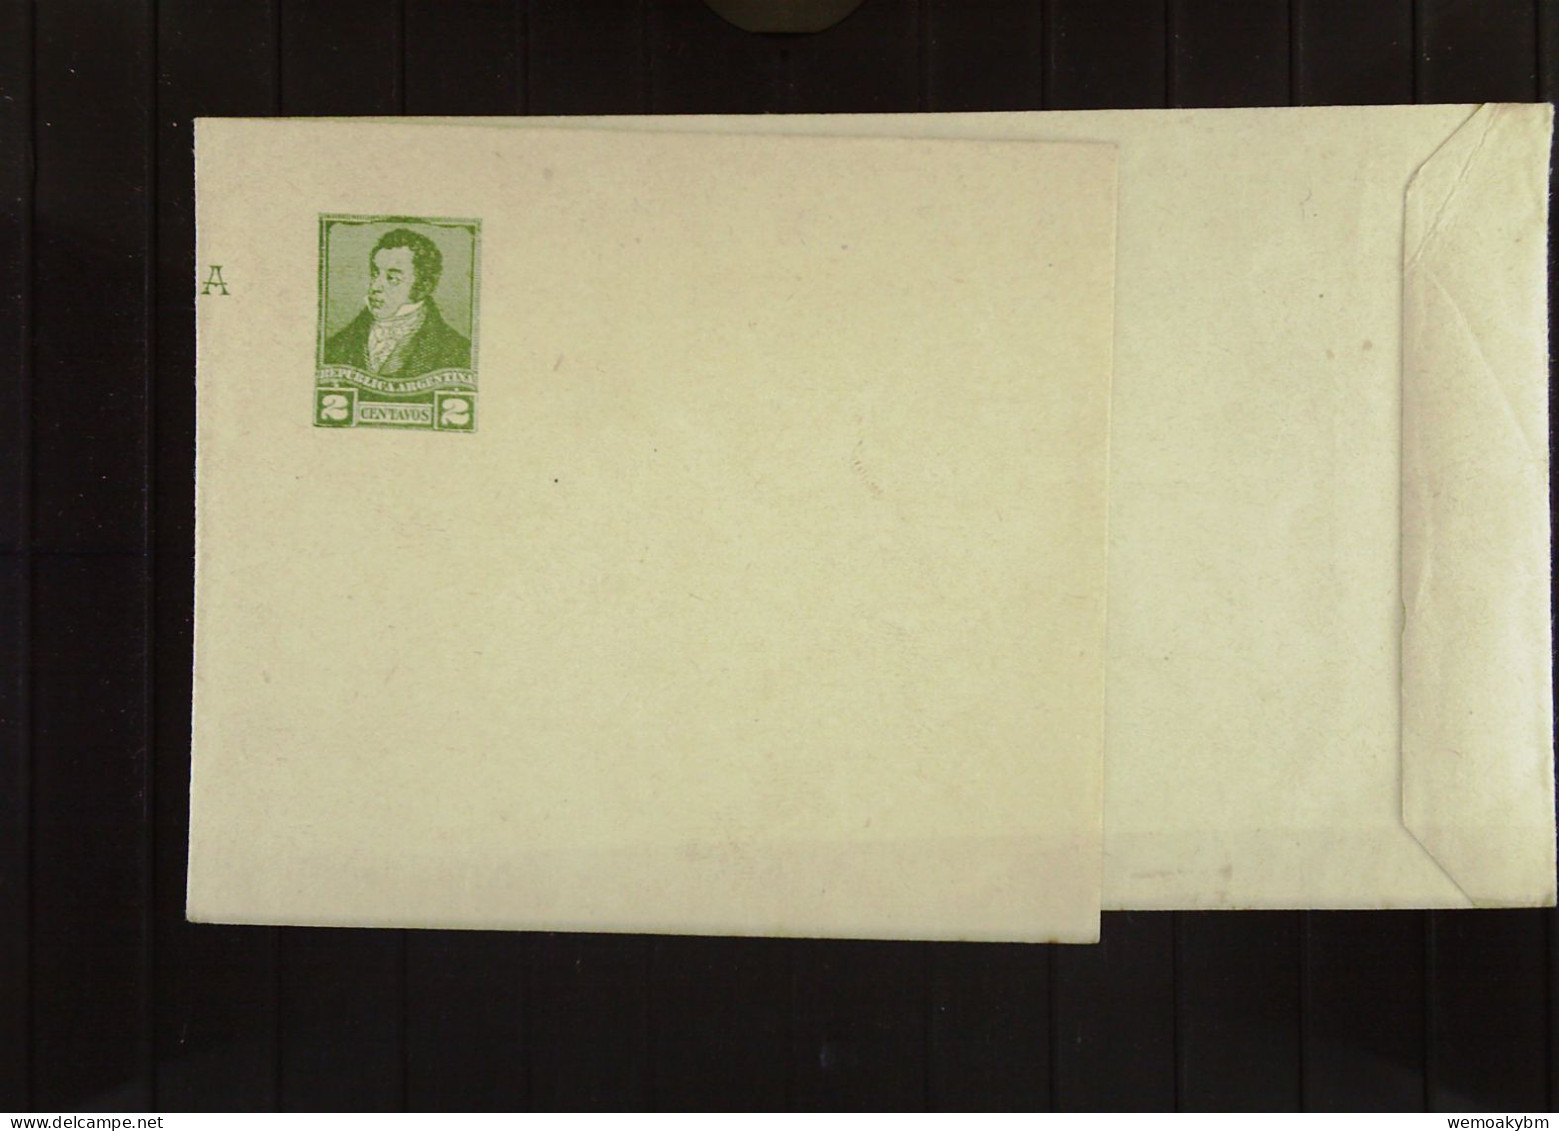 Argentinien: Ganzsache Zeitungsbandarole Mit 2 Centavos REPUBLICA ARGENTINA Um 1880 Unbenutzt - Postal Stationery